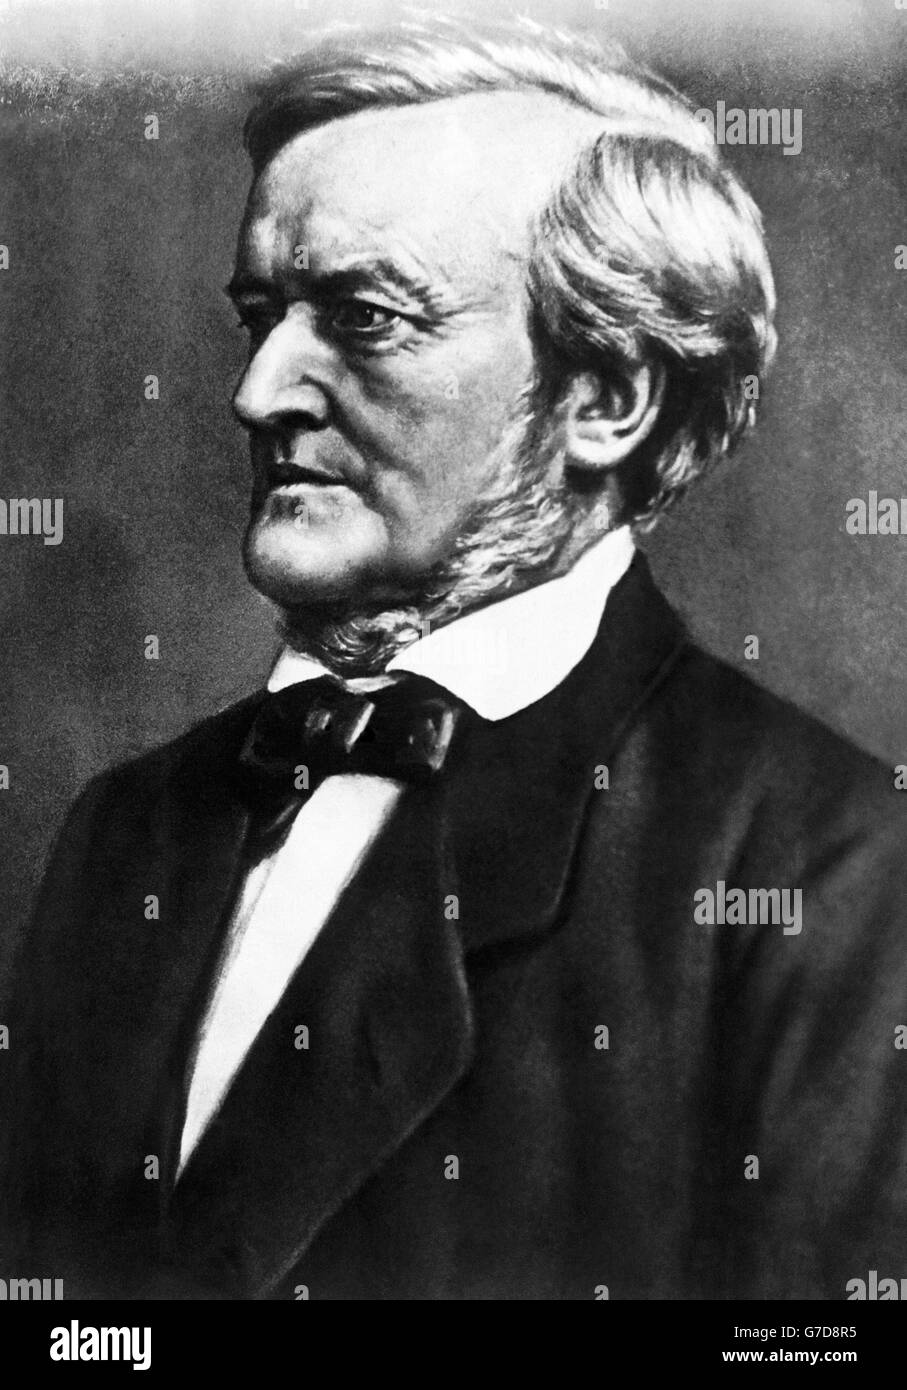 Porträt des deutschen Komponisten, Theaterregisseurs, Polemikers und Dirigenten Richard Wagner. Um 1870. Stockfoto